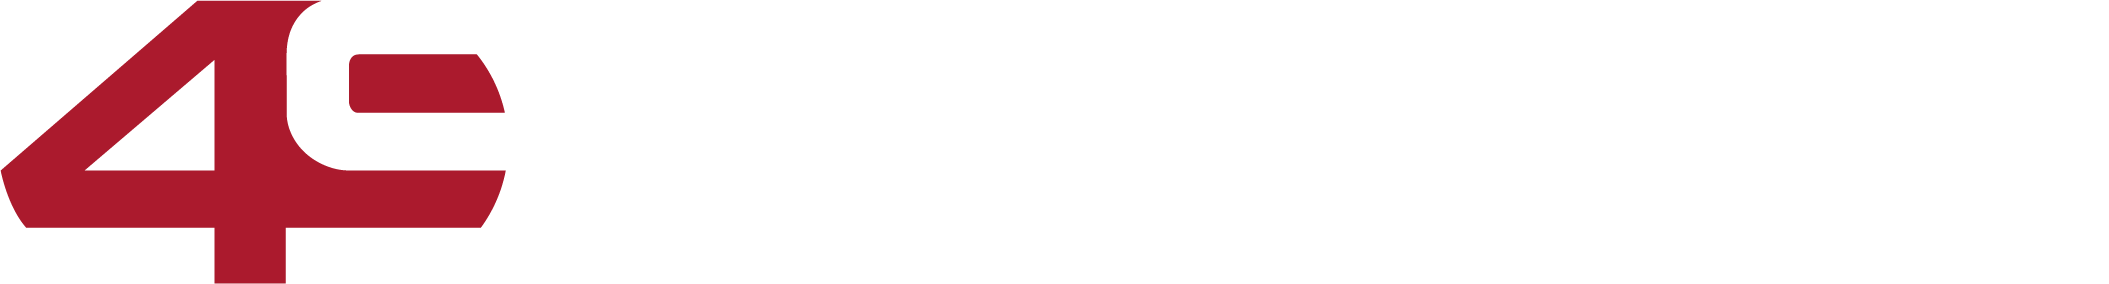 FORTY NINE DEGREES logo